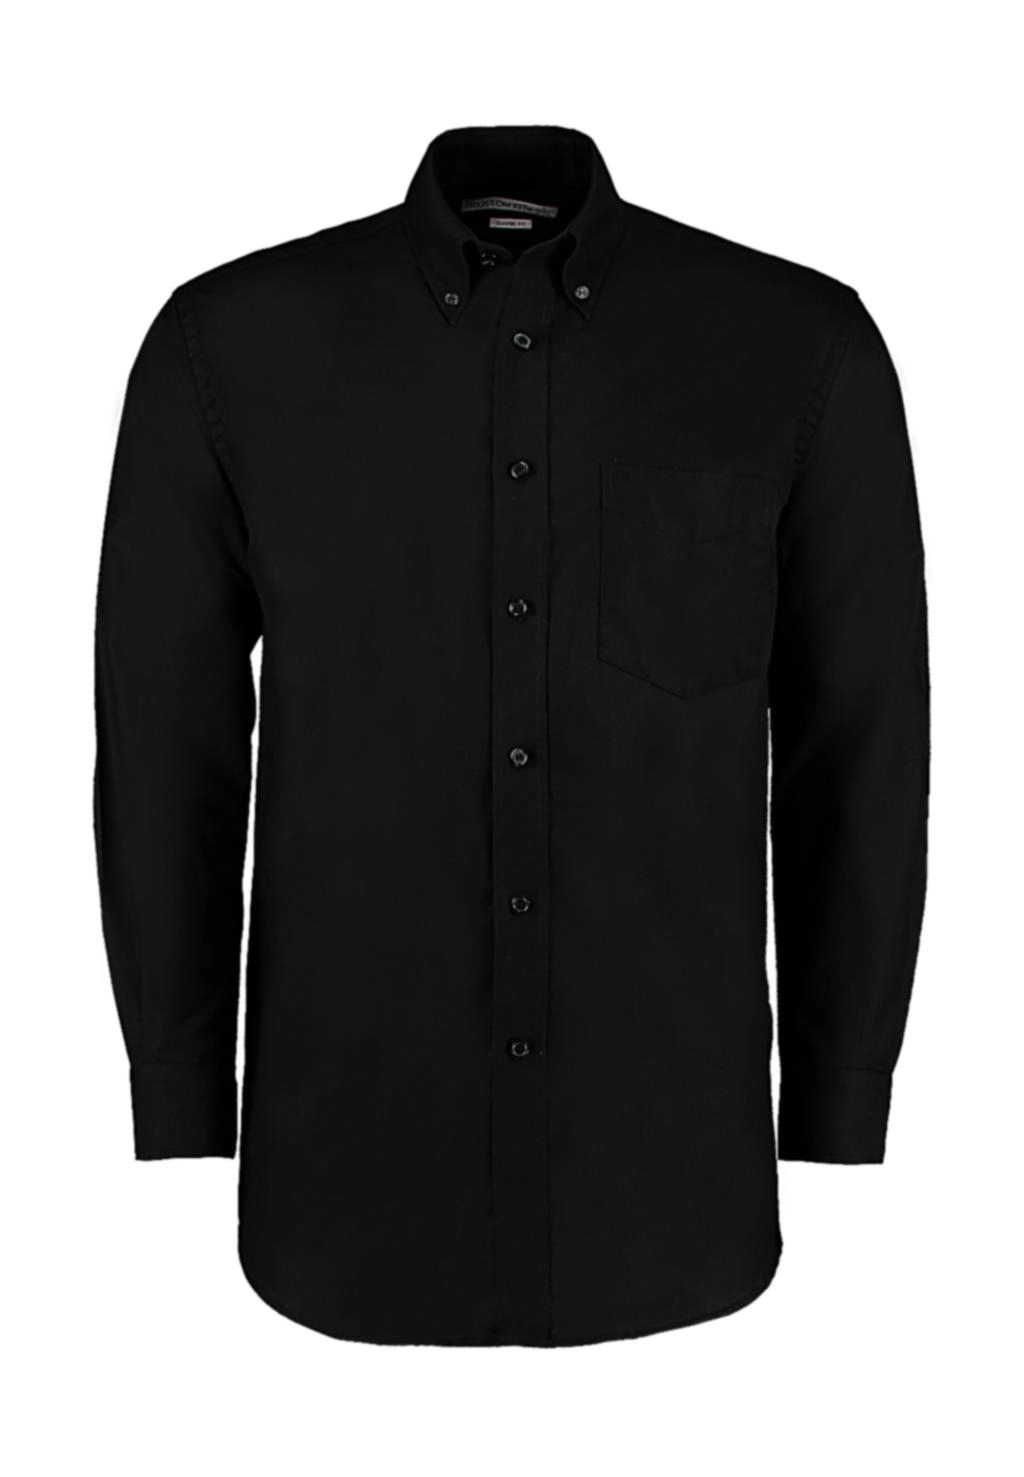 Classic Fit Workwear Oxford Shirt zum Besticken und Bedrucken in der Farbe Black mit Ihren Logo, Schriftzug oder Motiv.